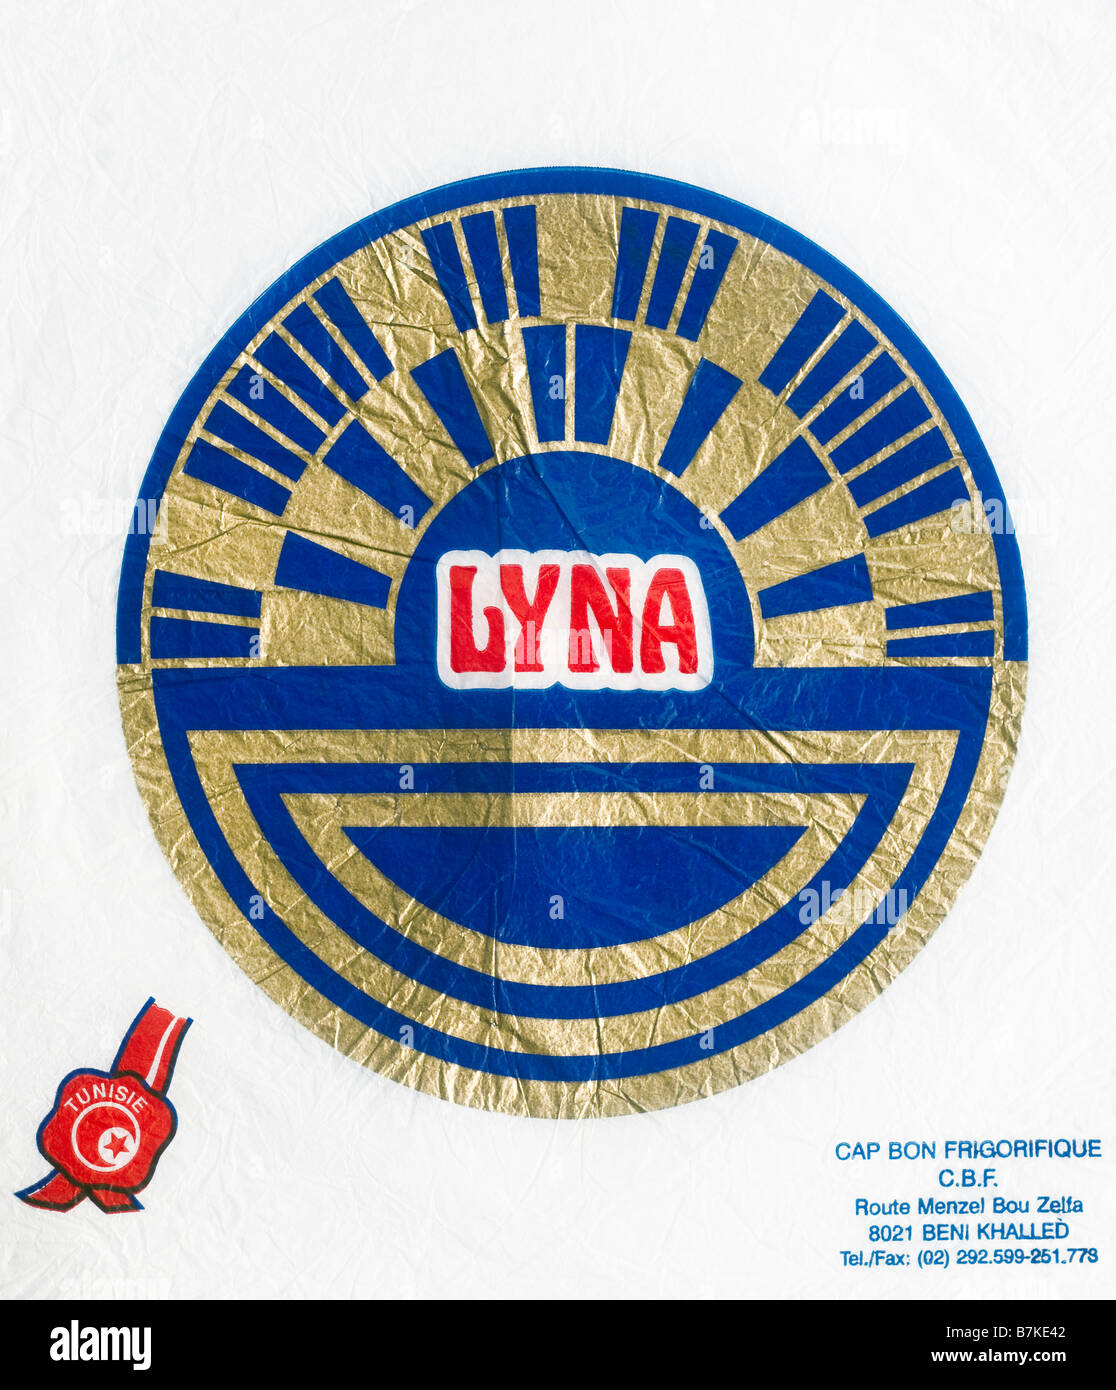 Figurati stampato / agrumi involucro dalla Tunisia - Lyna / Blue Gold Disk illustrazione su carta velina. Foto Stock